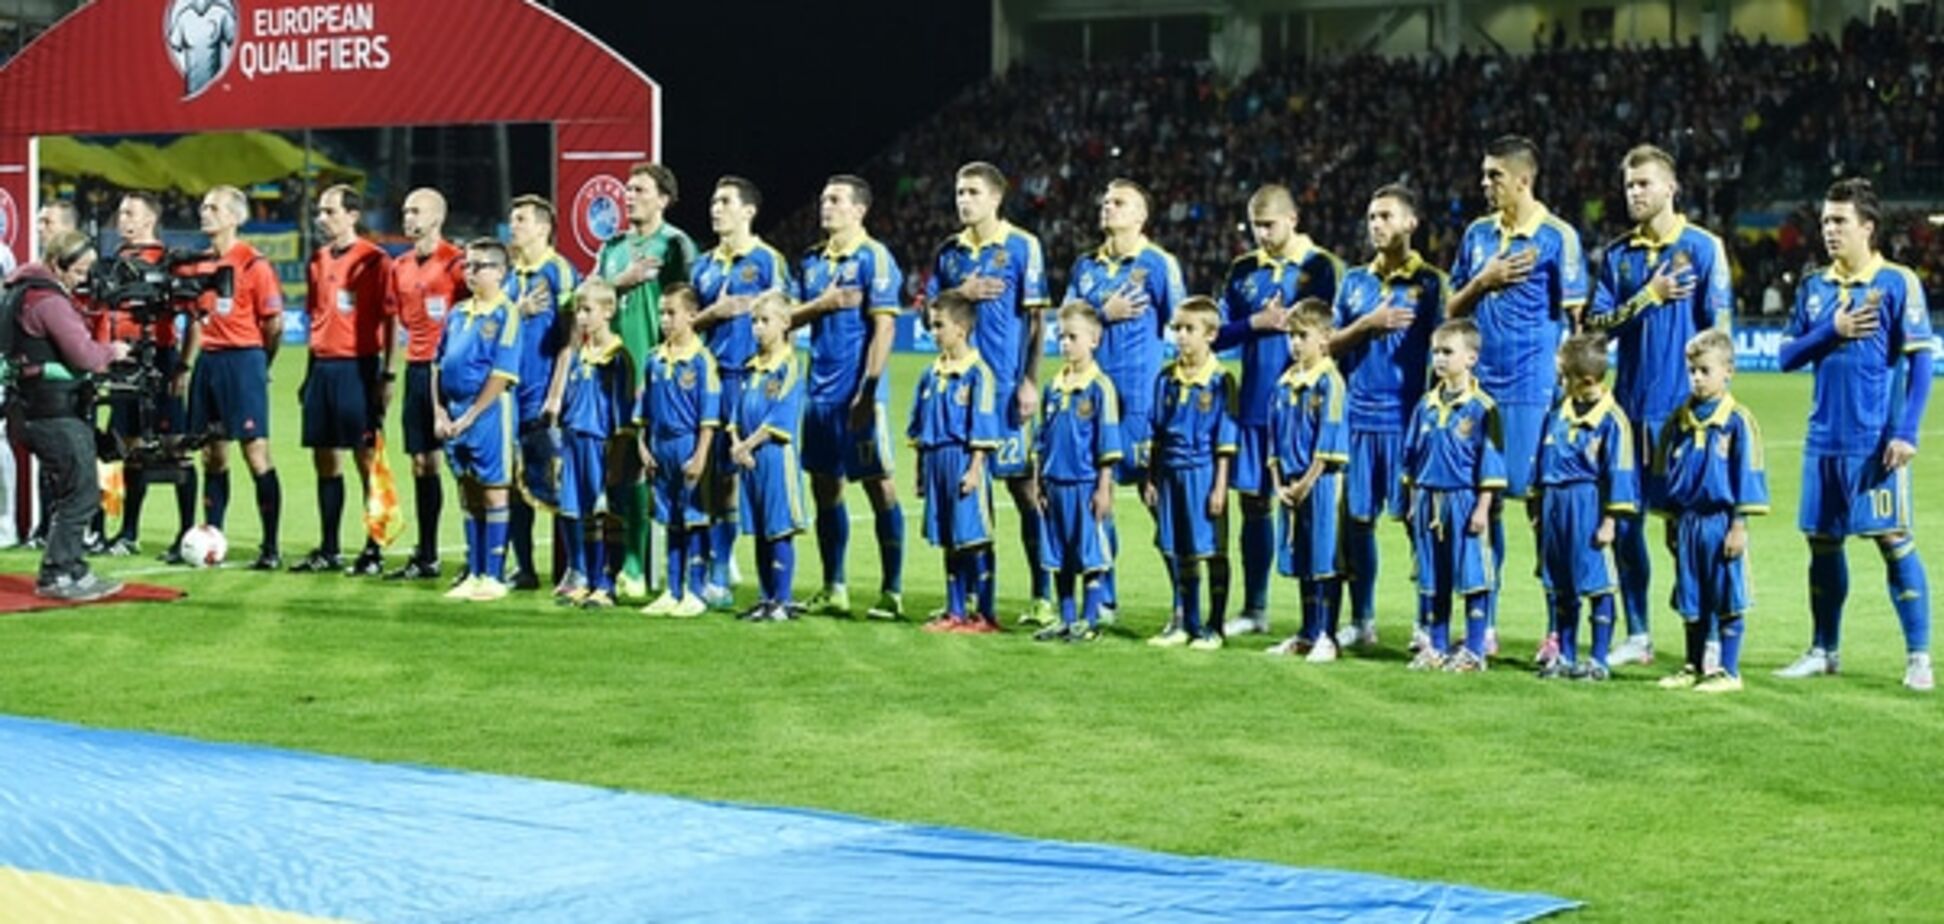 Избавиться от иллюзий. 5 выводов после матча Словакия – Украина